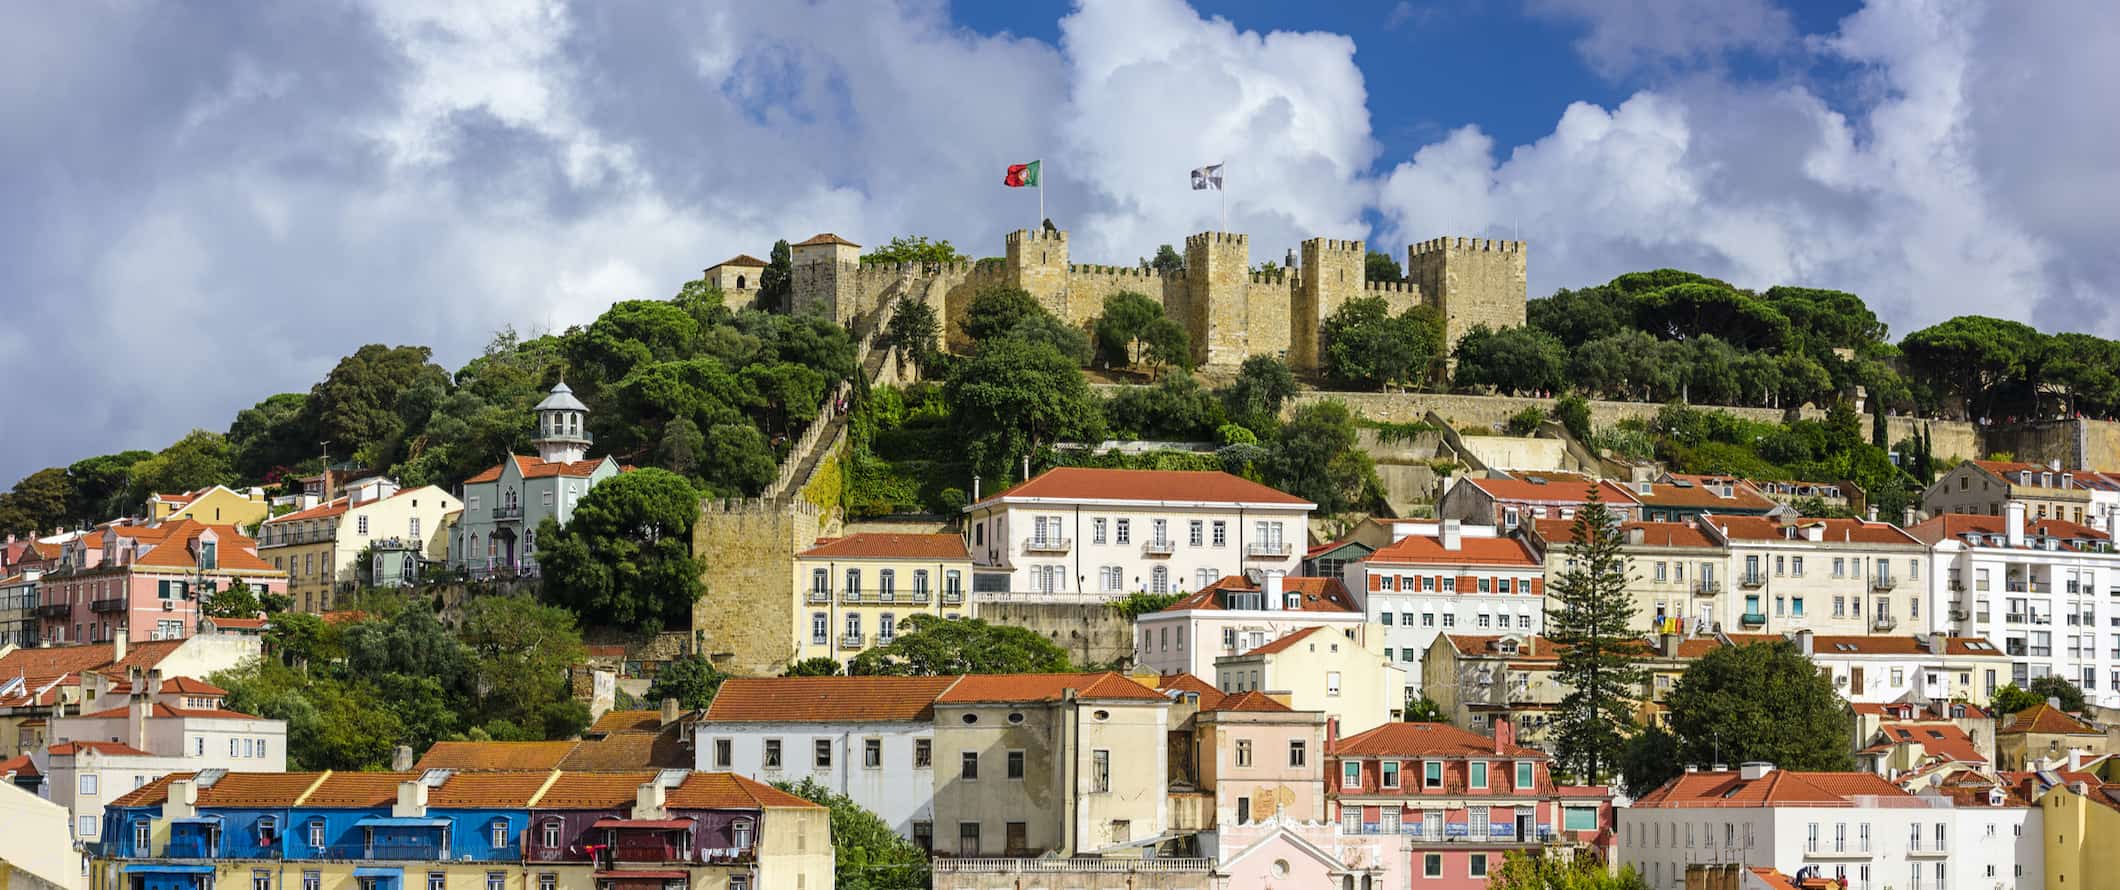 San Jorge Castle com vista para a colorida cidade de Lisboa, Portugal